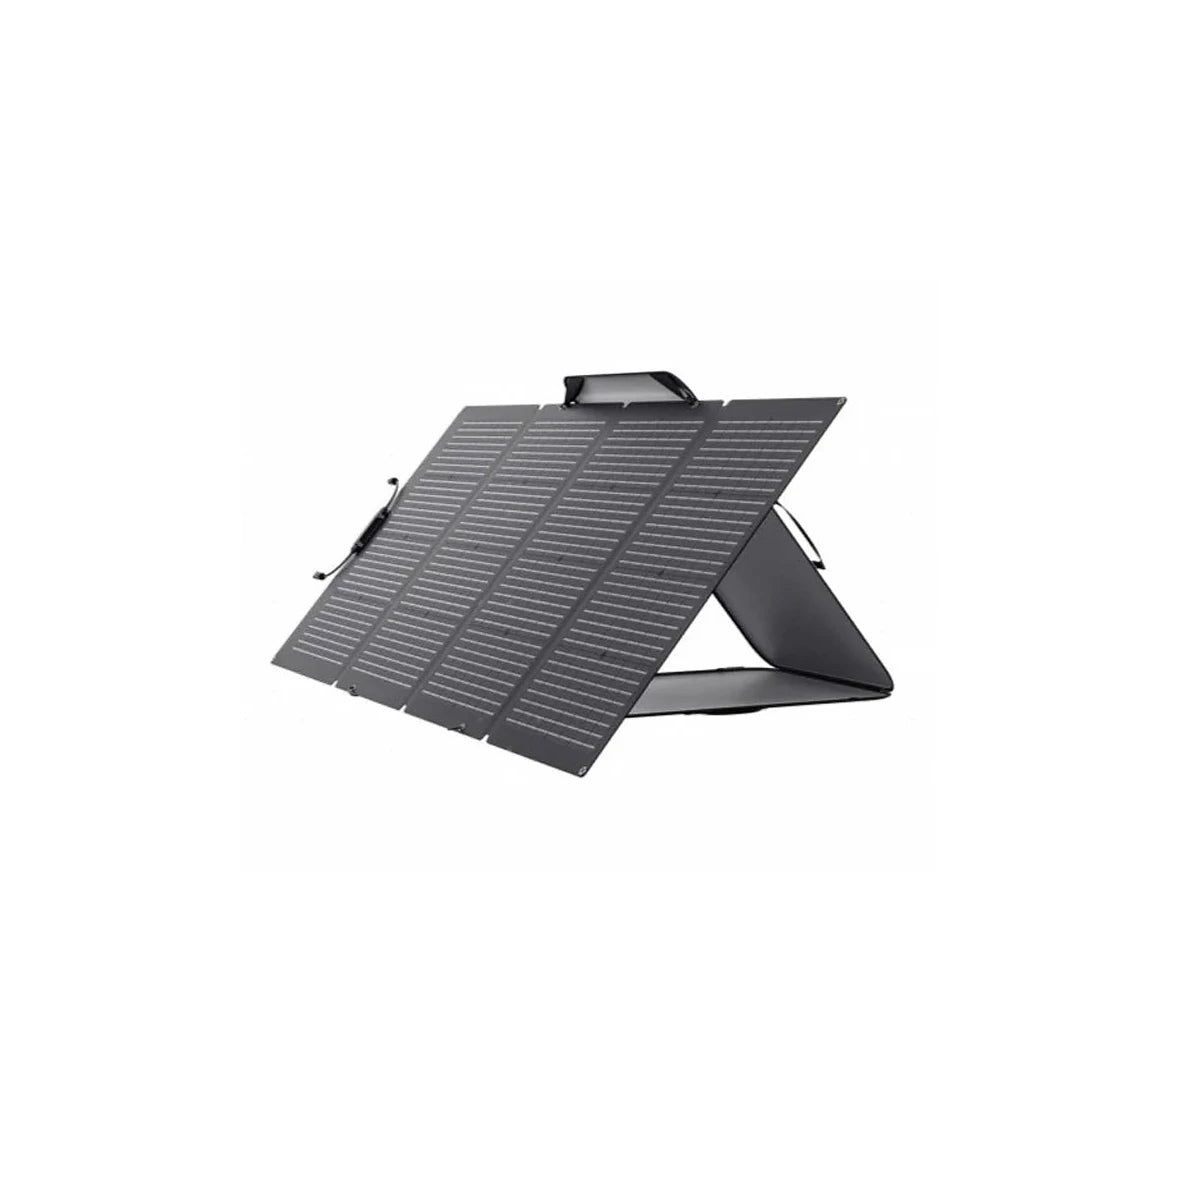 Aufgebautes Solarpaneel befestigt an eigener Tasche Ecoflow 220 W